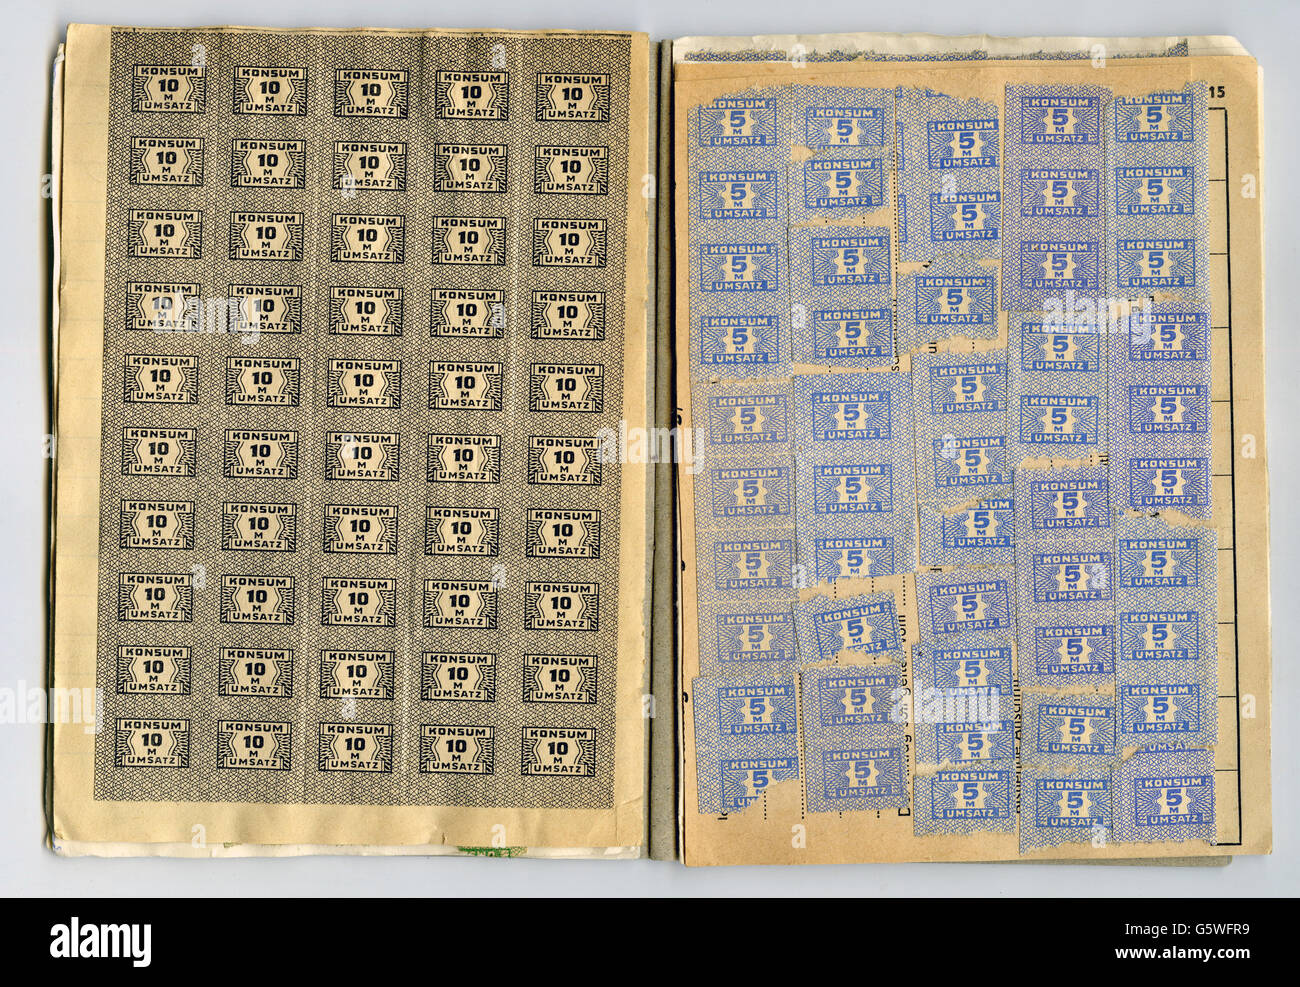 Trading stamps Banque de photographies et d'images à haute résolution -  Alamy